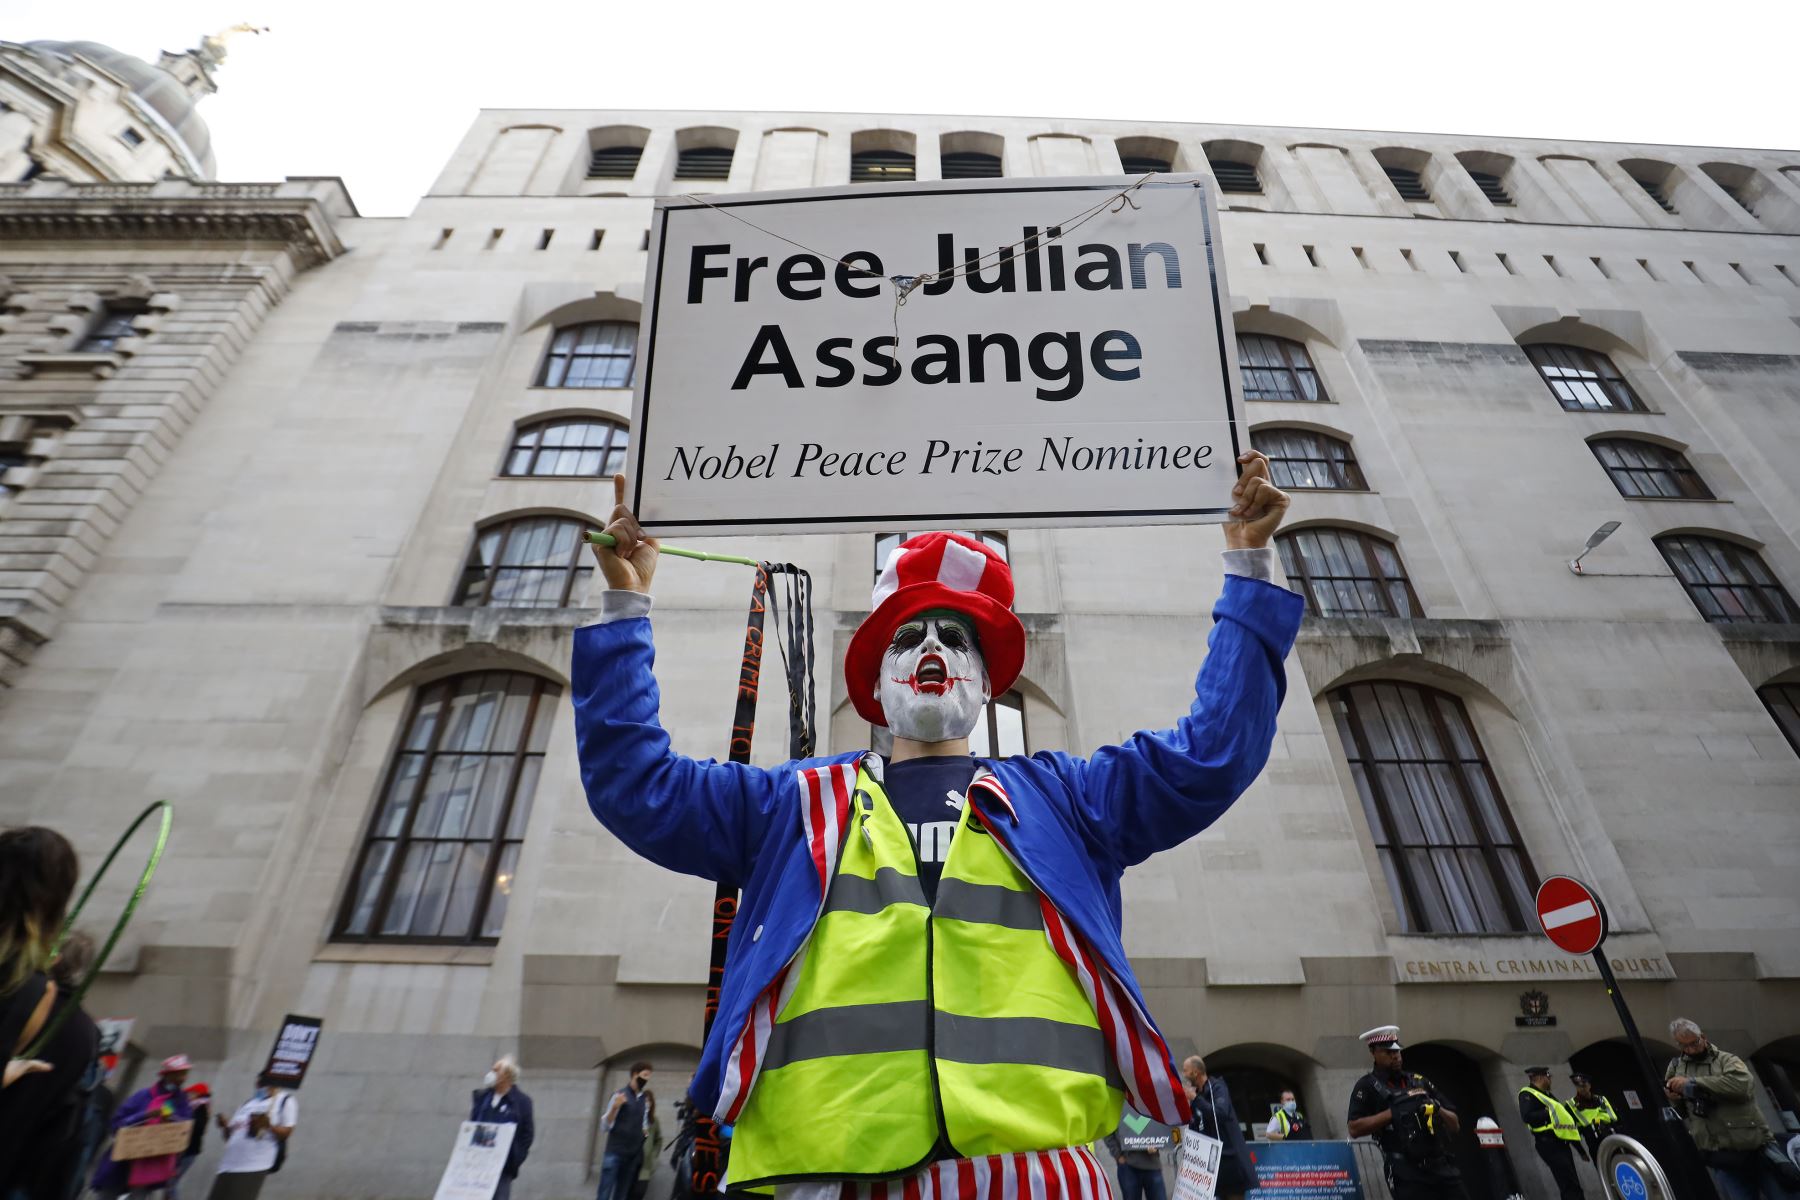 Los manifestantes protestan frente a la corte de Old Bailey en el centro de Londres, mientras se reanuda nuevamente la audiencia de extradición del fundador de WikiLeaks, Julian Assange. Foto: AFP